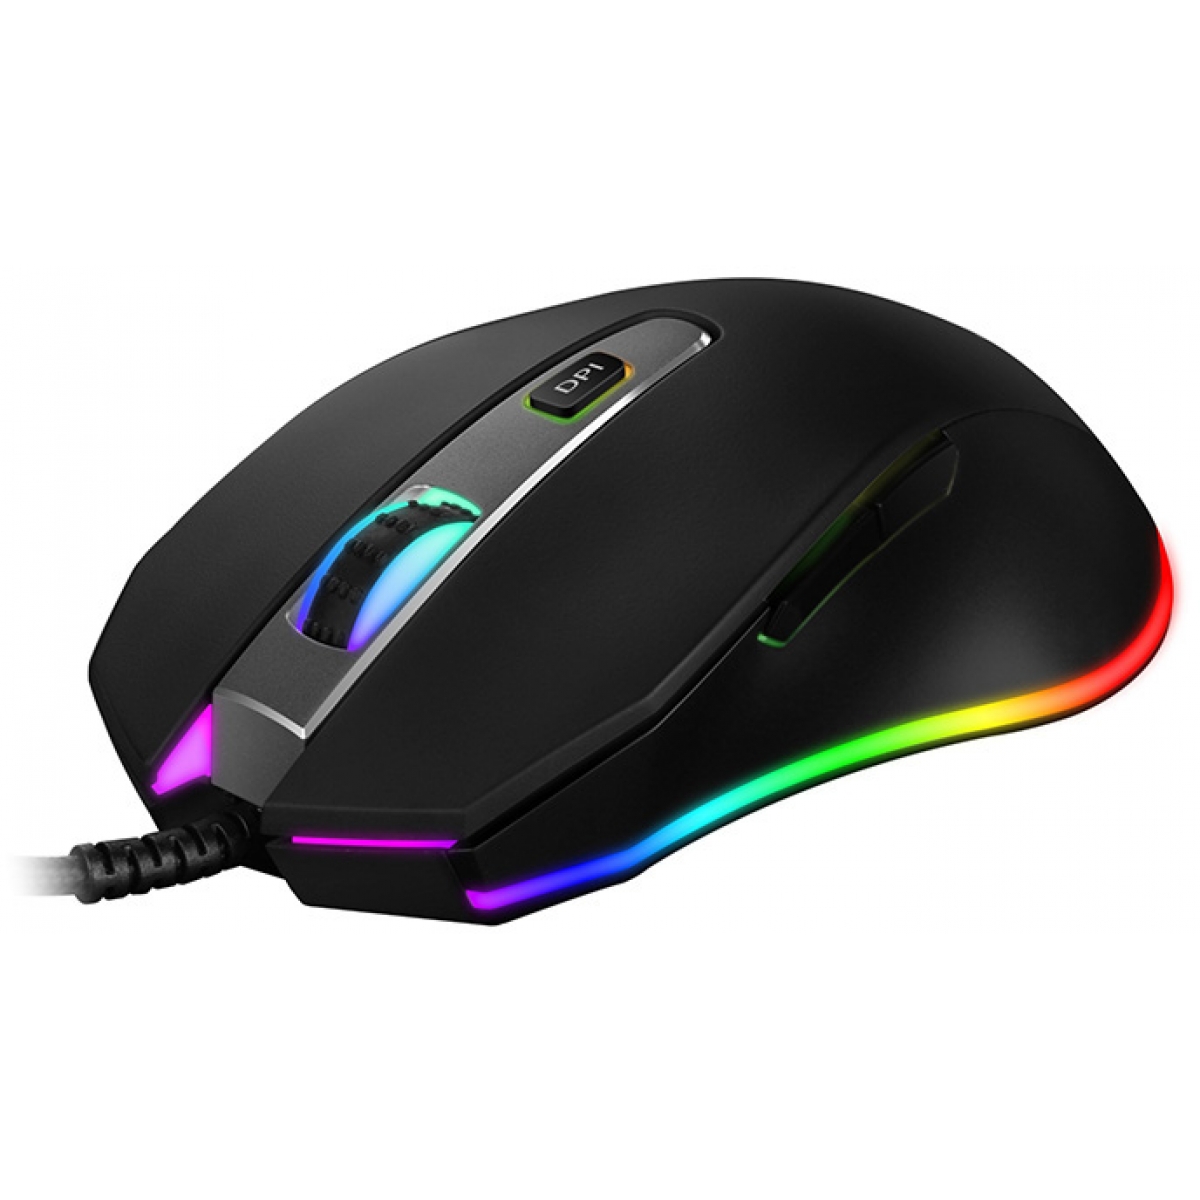 Mouse Gamer Havit MS837 RGB, 7000 DPI, 7 Botões, Black